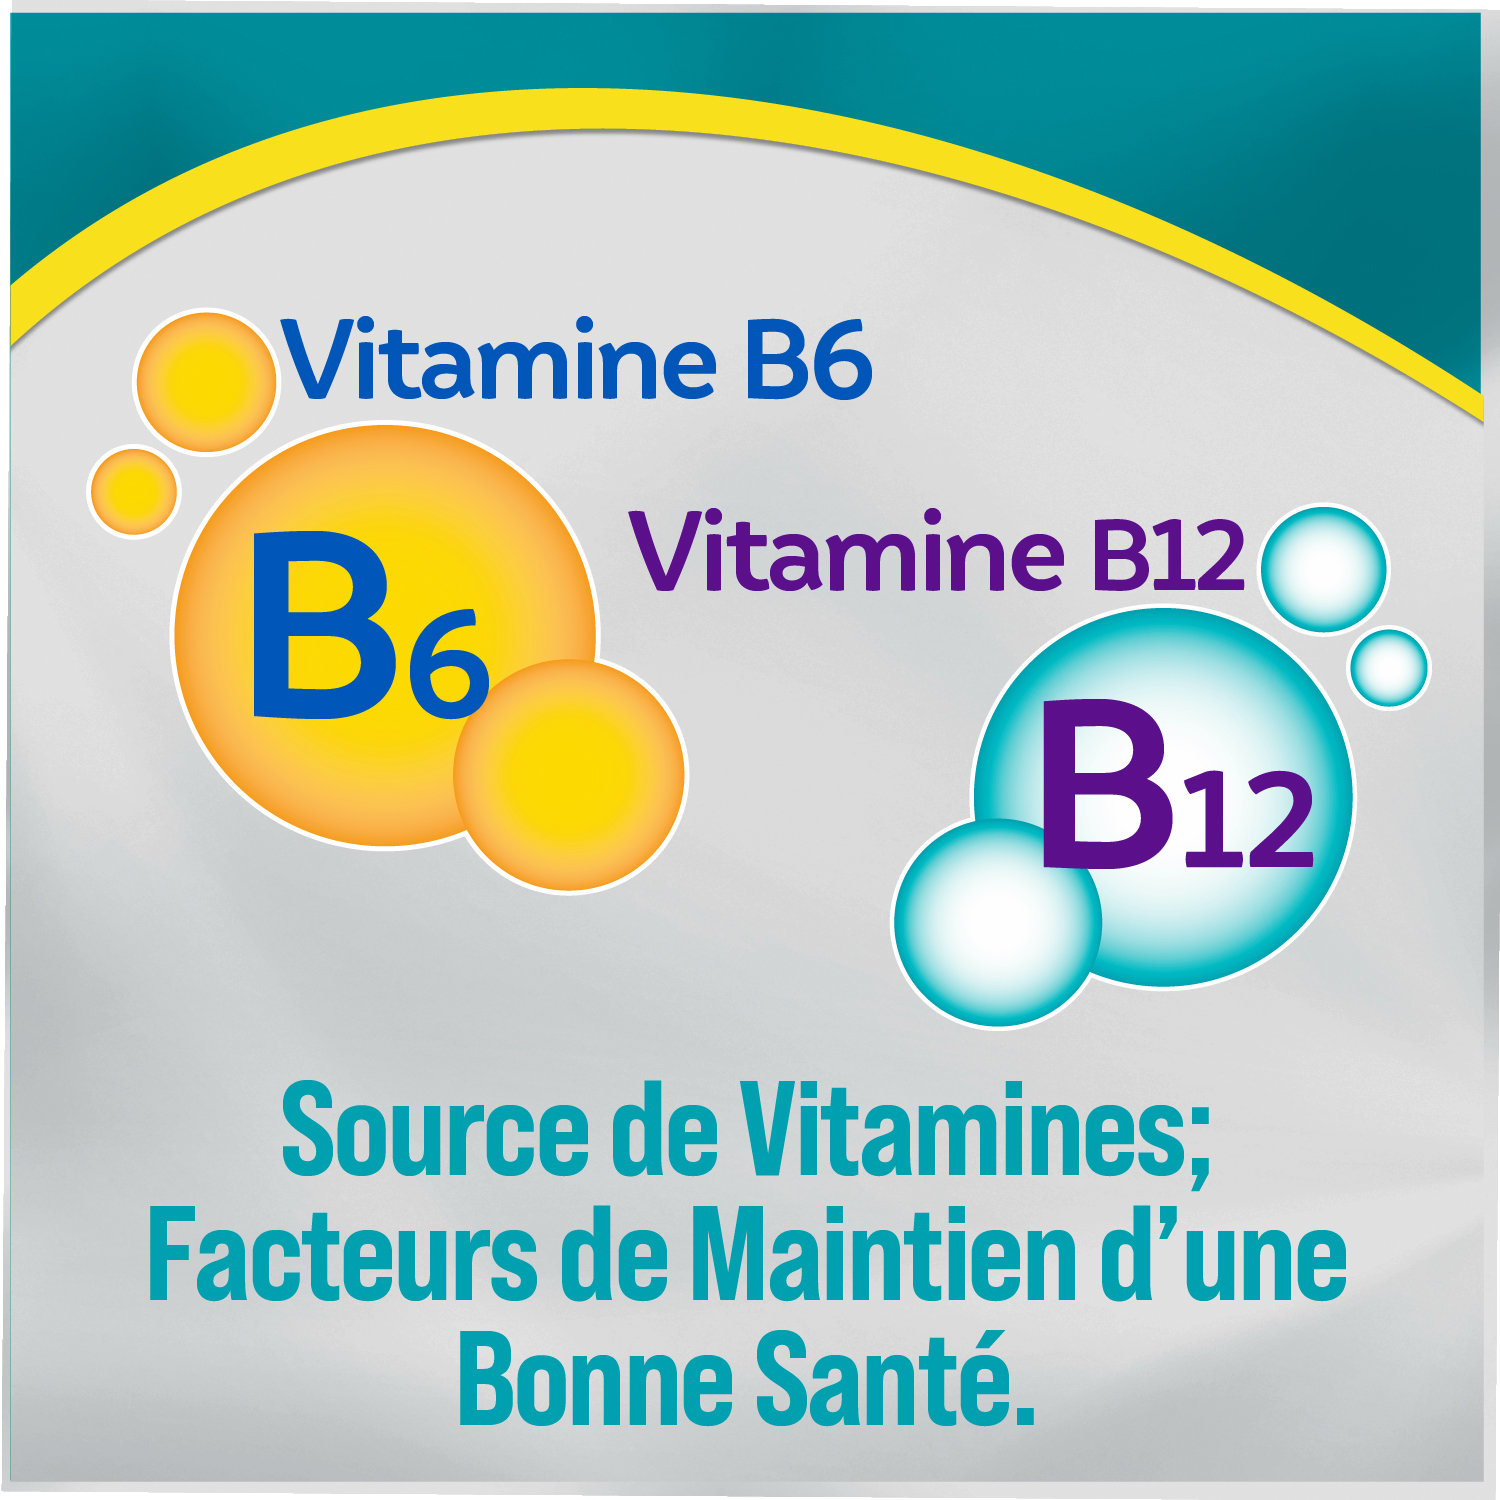 Vitamine B6, vitamine B12, source de vitamines; facteurs de maintien d’une bonne santé.